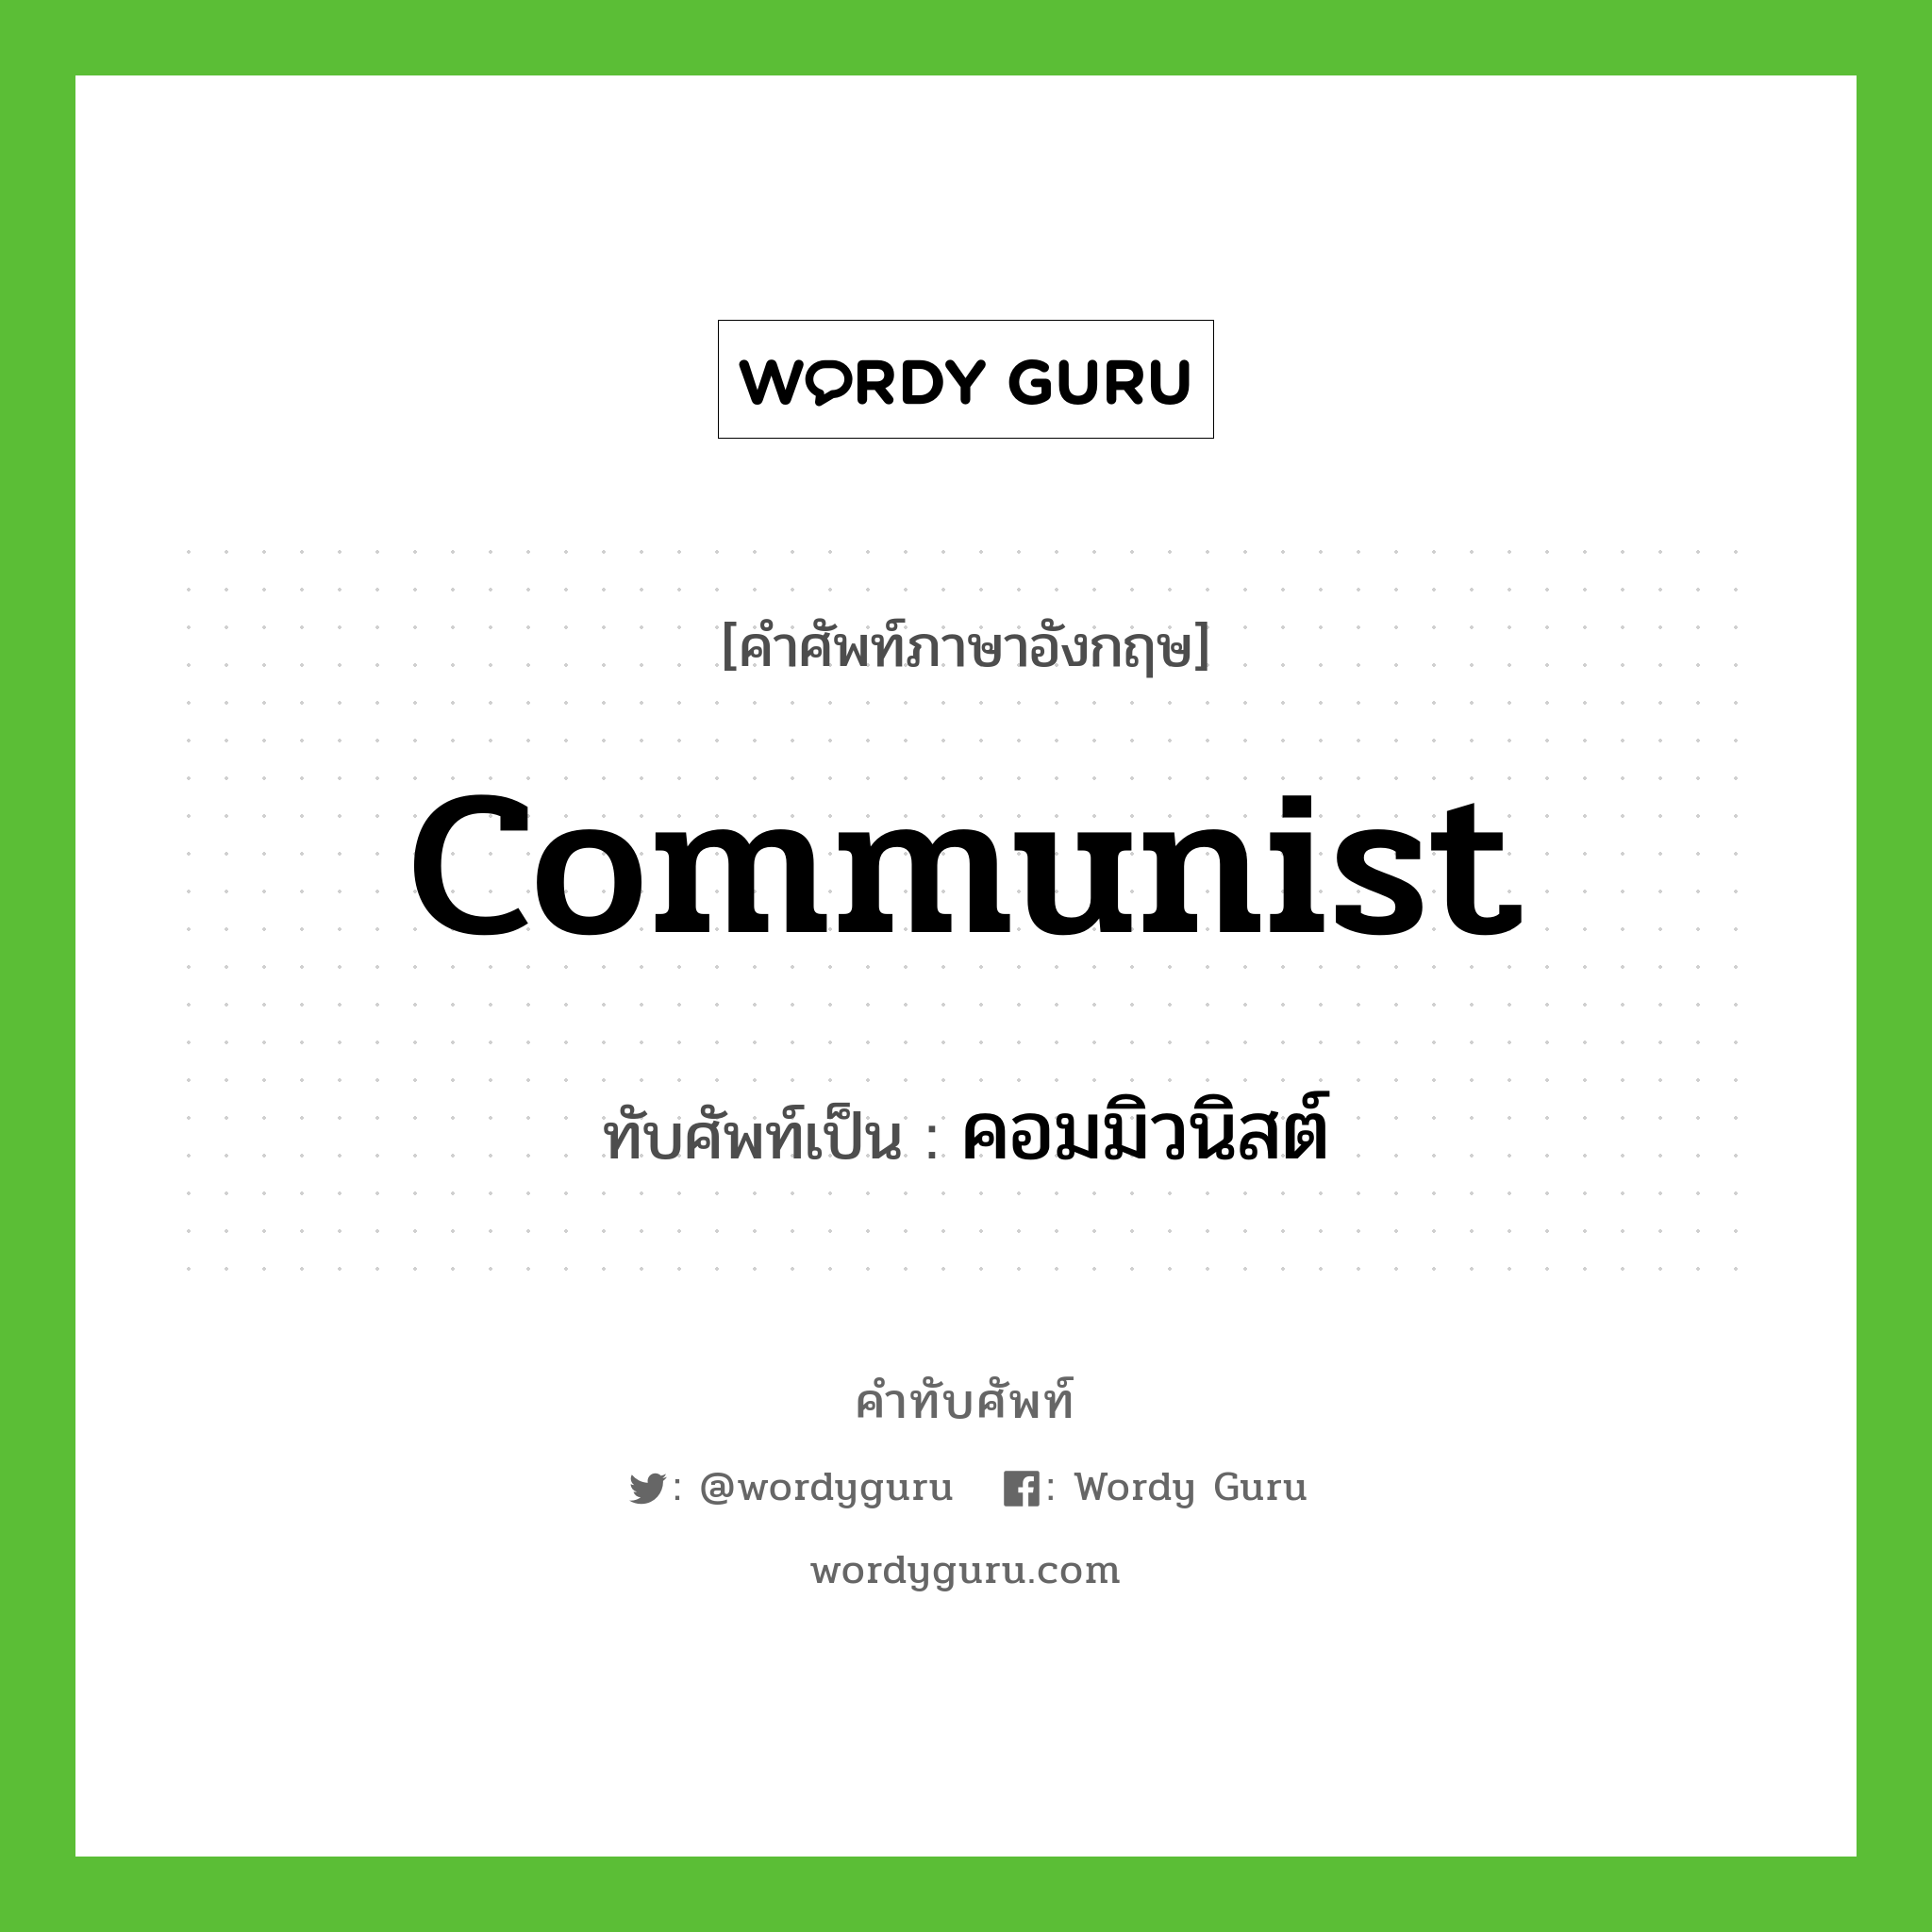 communist เขียนเป็นคำไทยว่าอะไร?, คำศัพท์ภาษาอังกฤษ communist ทับศัพท์เป็น คอมมิวนิสต์